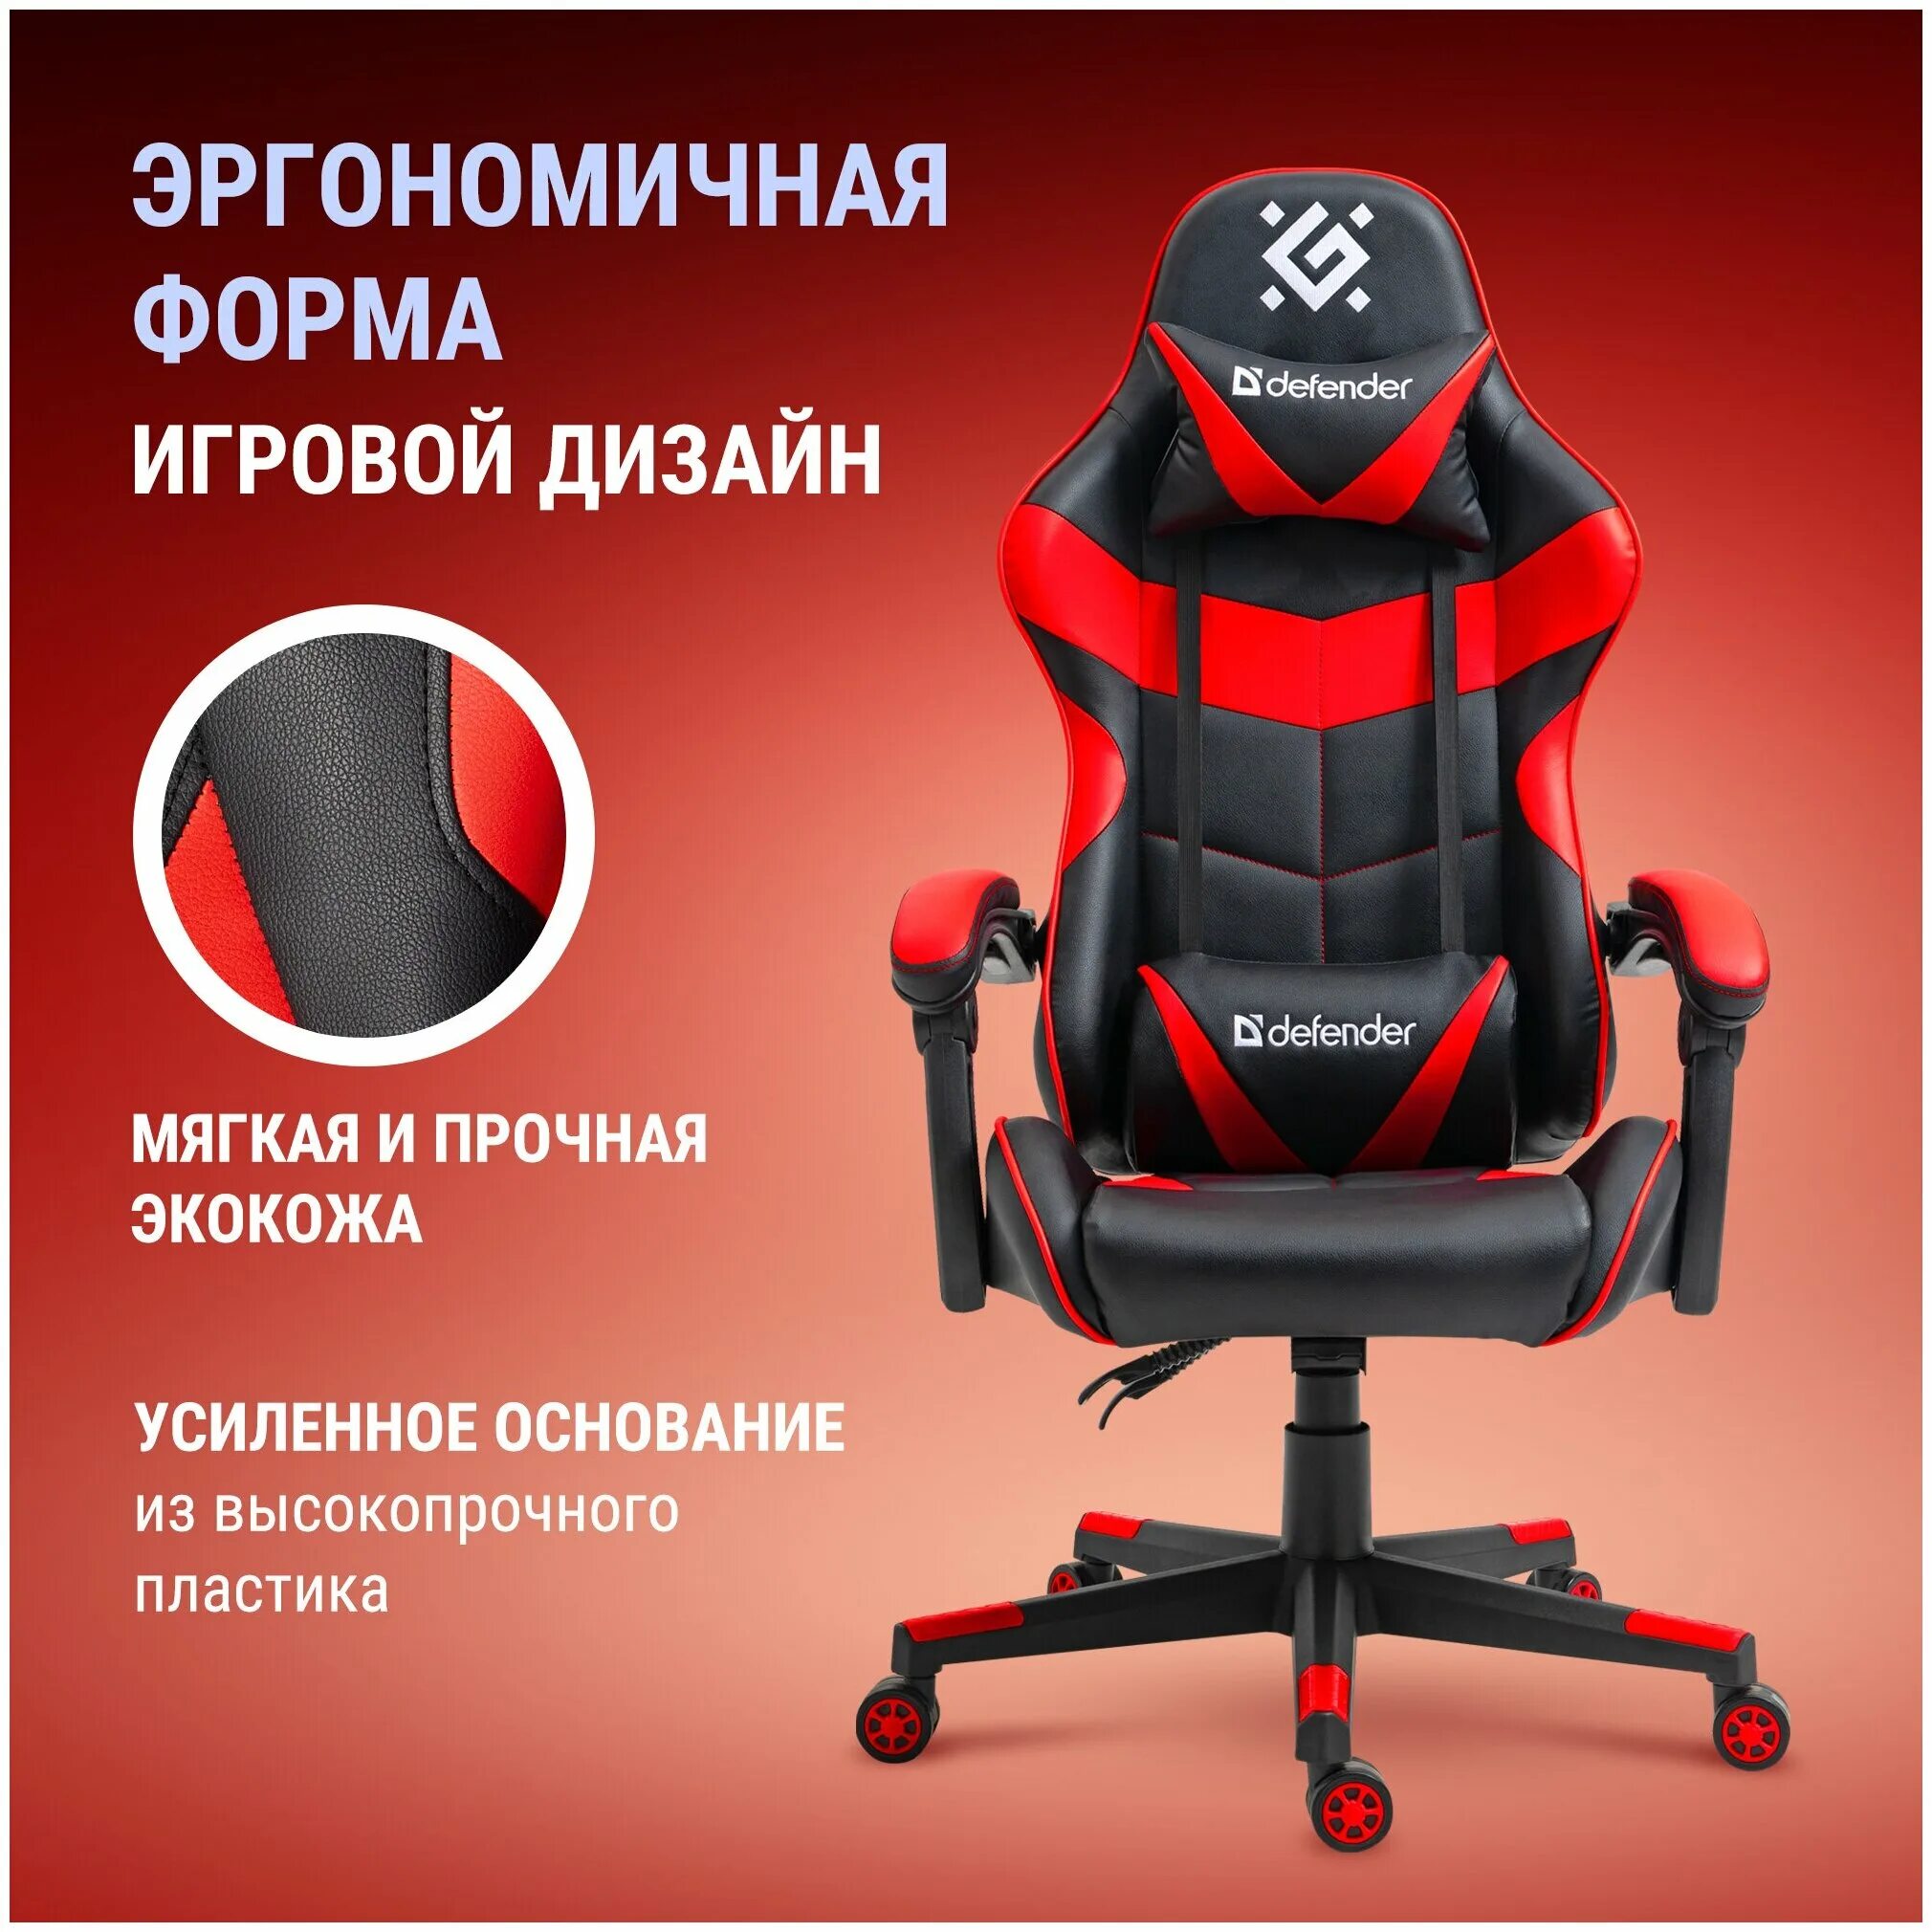 Игровое компьютерное кресло defender. Игровое кресло Defender Comfort красный. Defender Comfort 2 игровое кресло компьютерное. Игровое кресло Defender Comfort класс 3. Игровое кресло Defender Comfort красный, класс 3, 60мм.